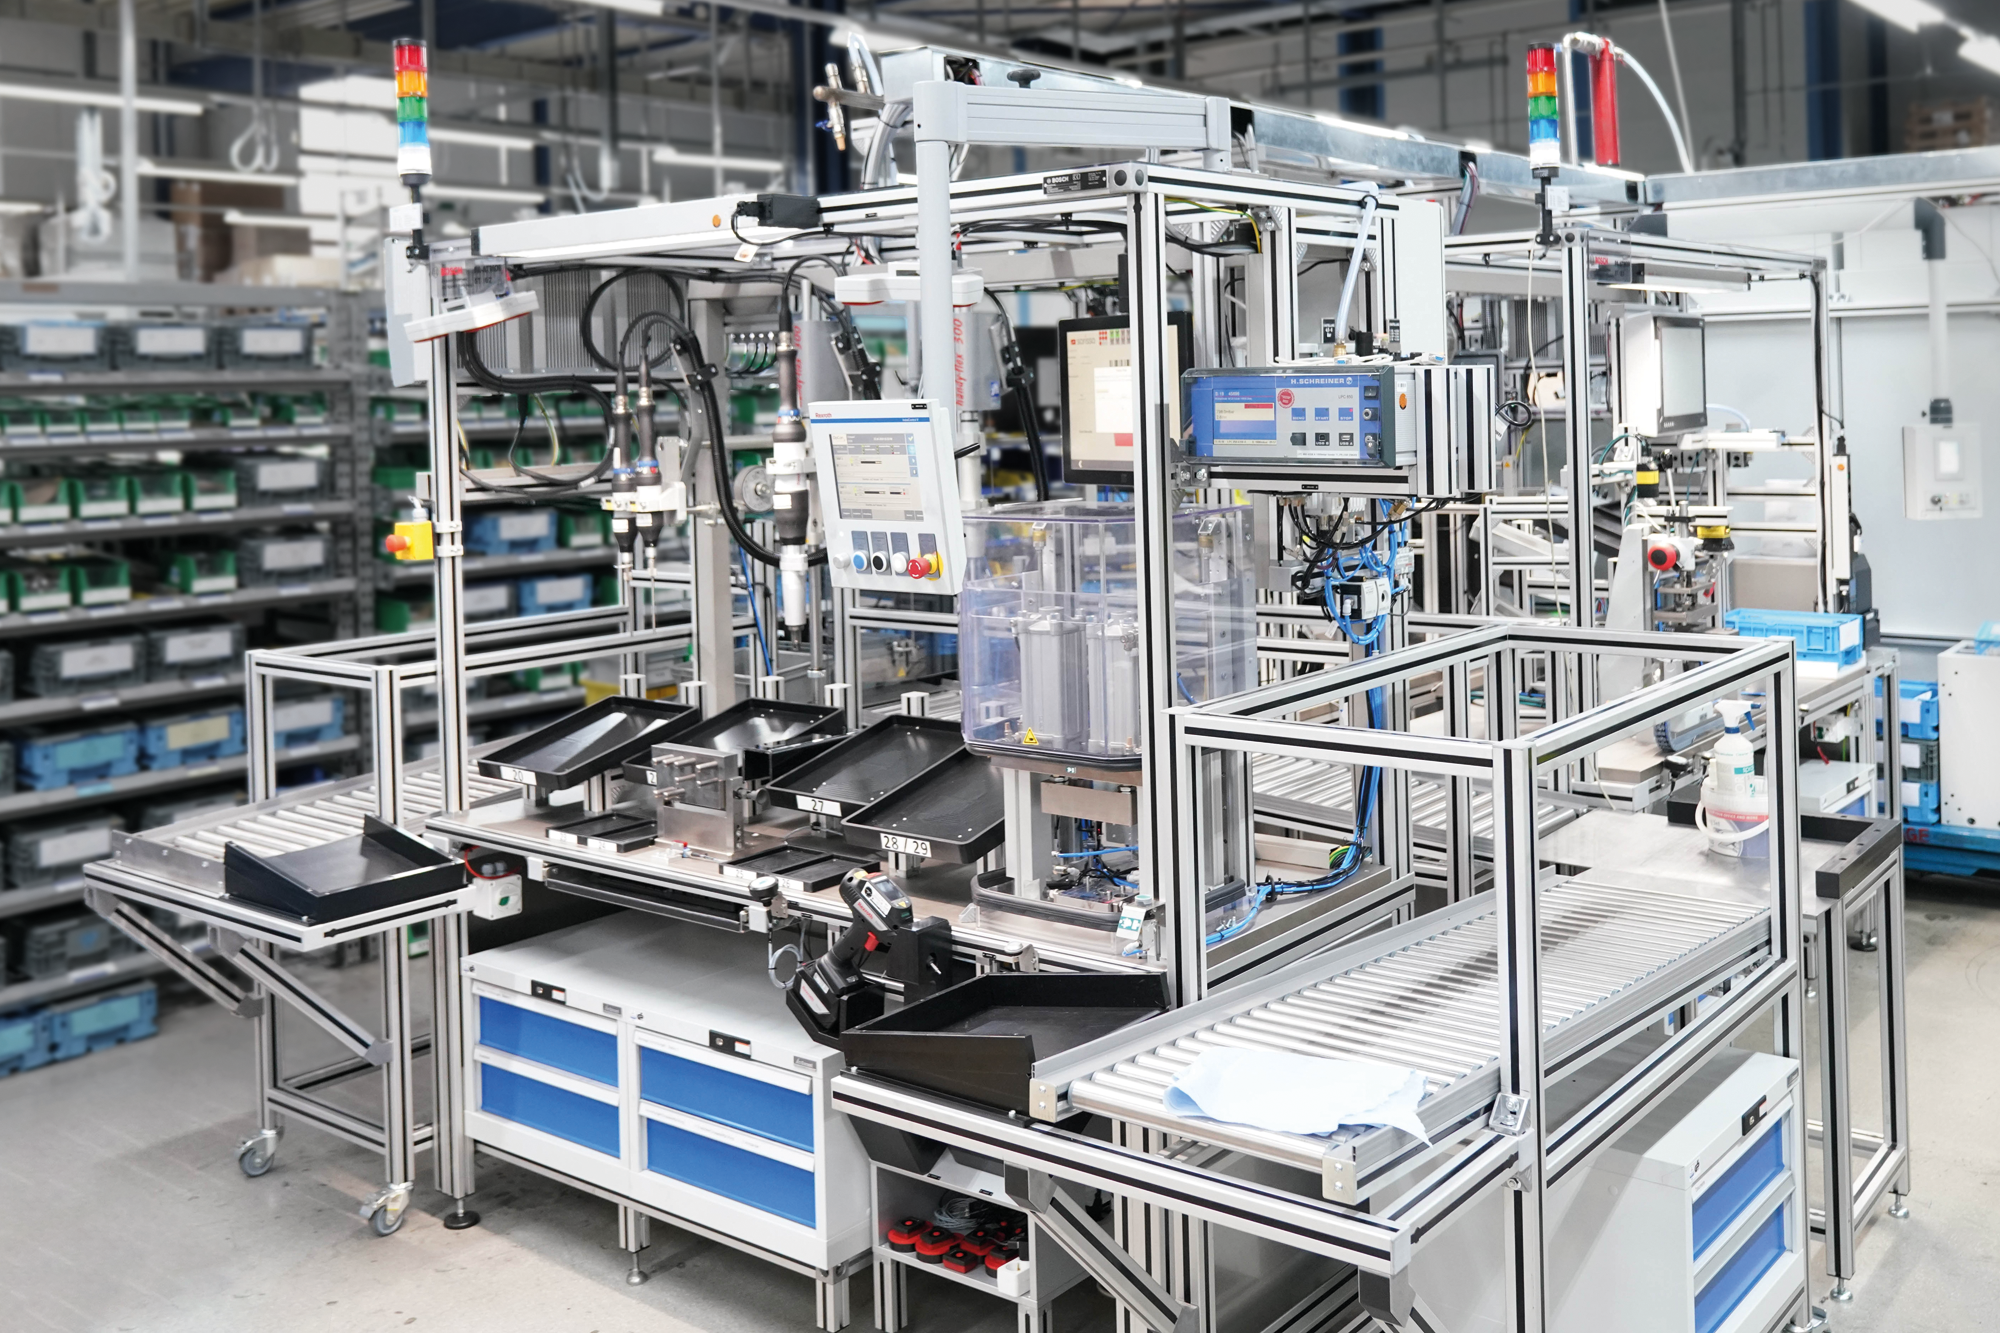 Bosch Rexroth inaugura ReXpace: Fábricas ahorrarían hasta 80% de energía con I4.0